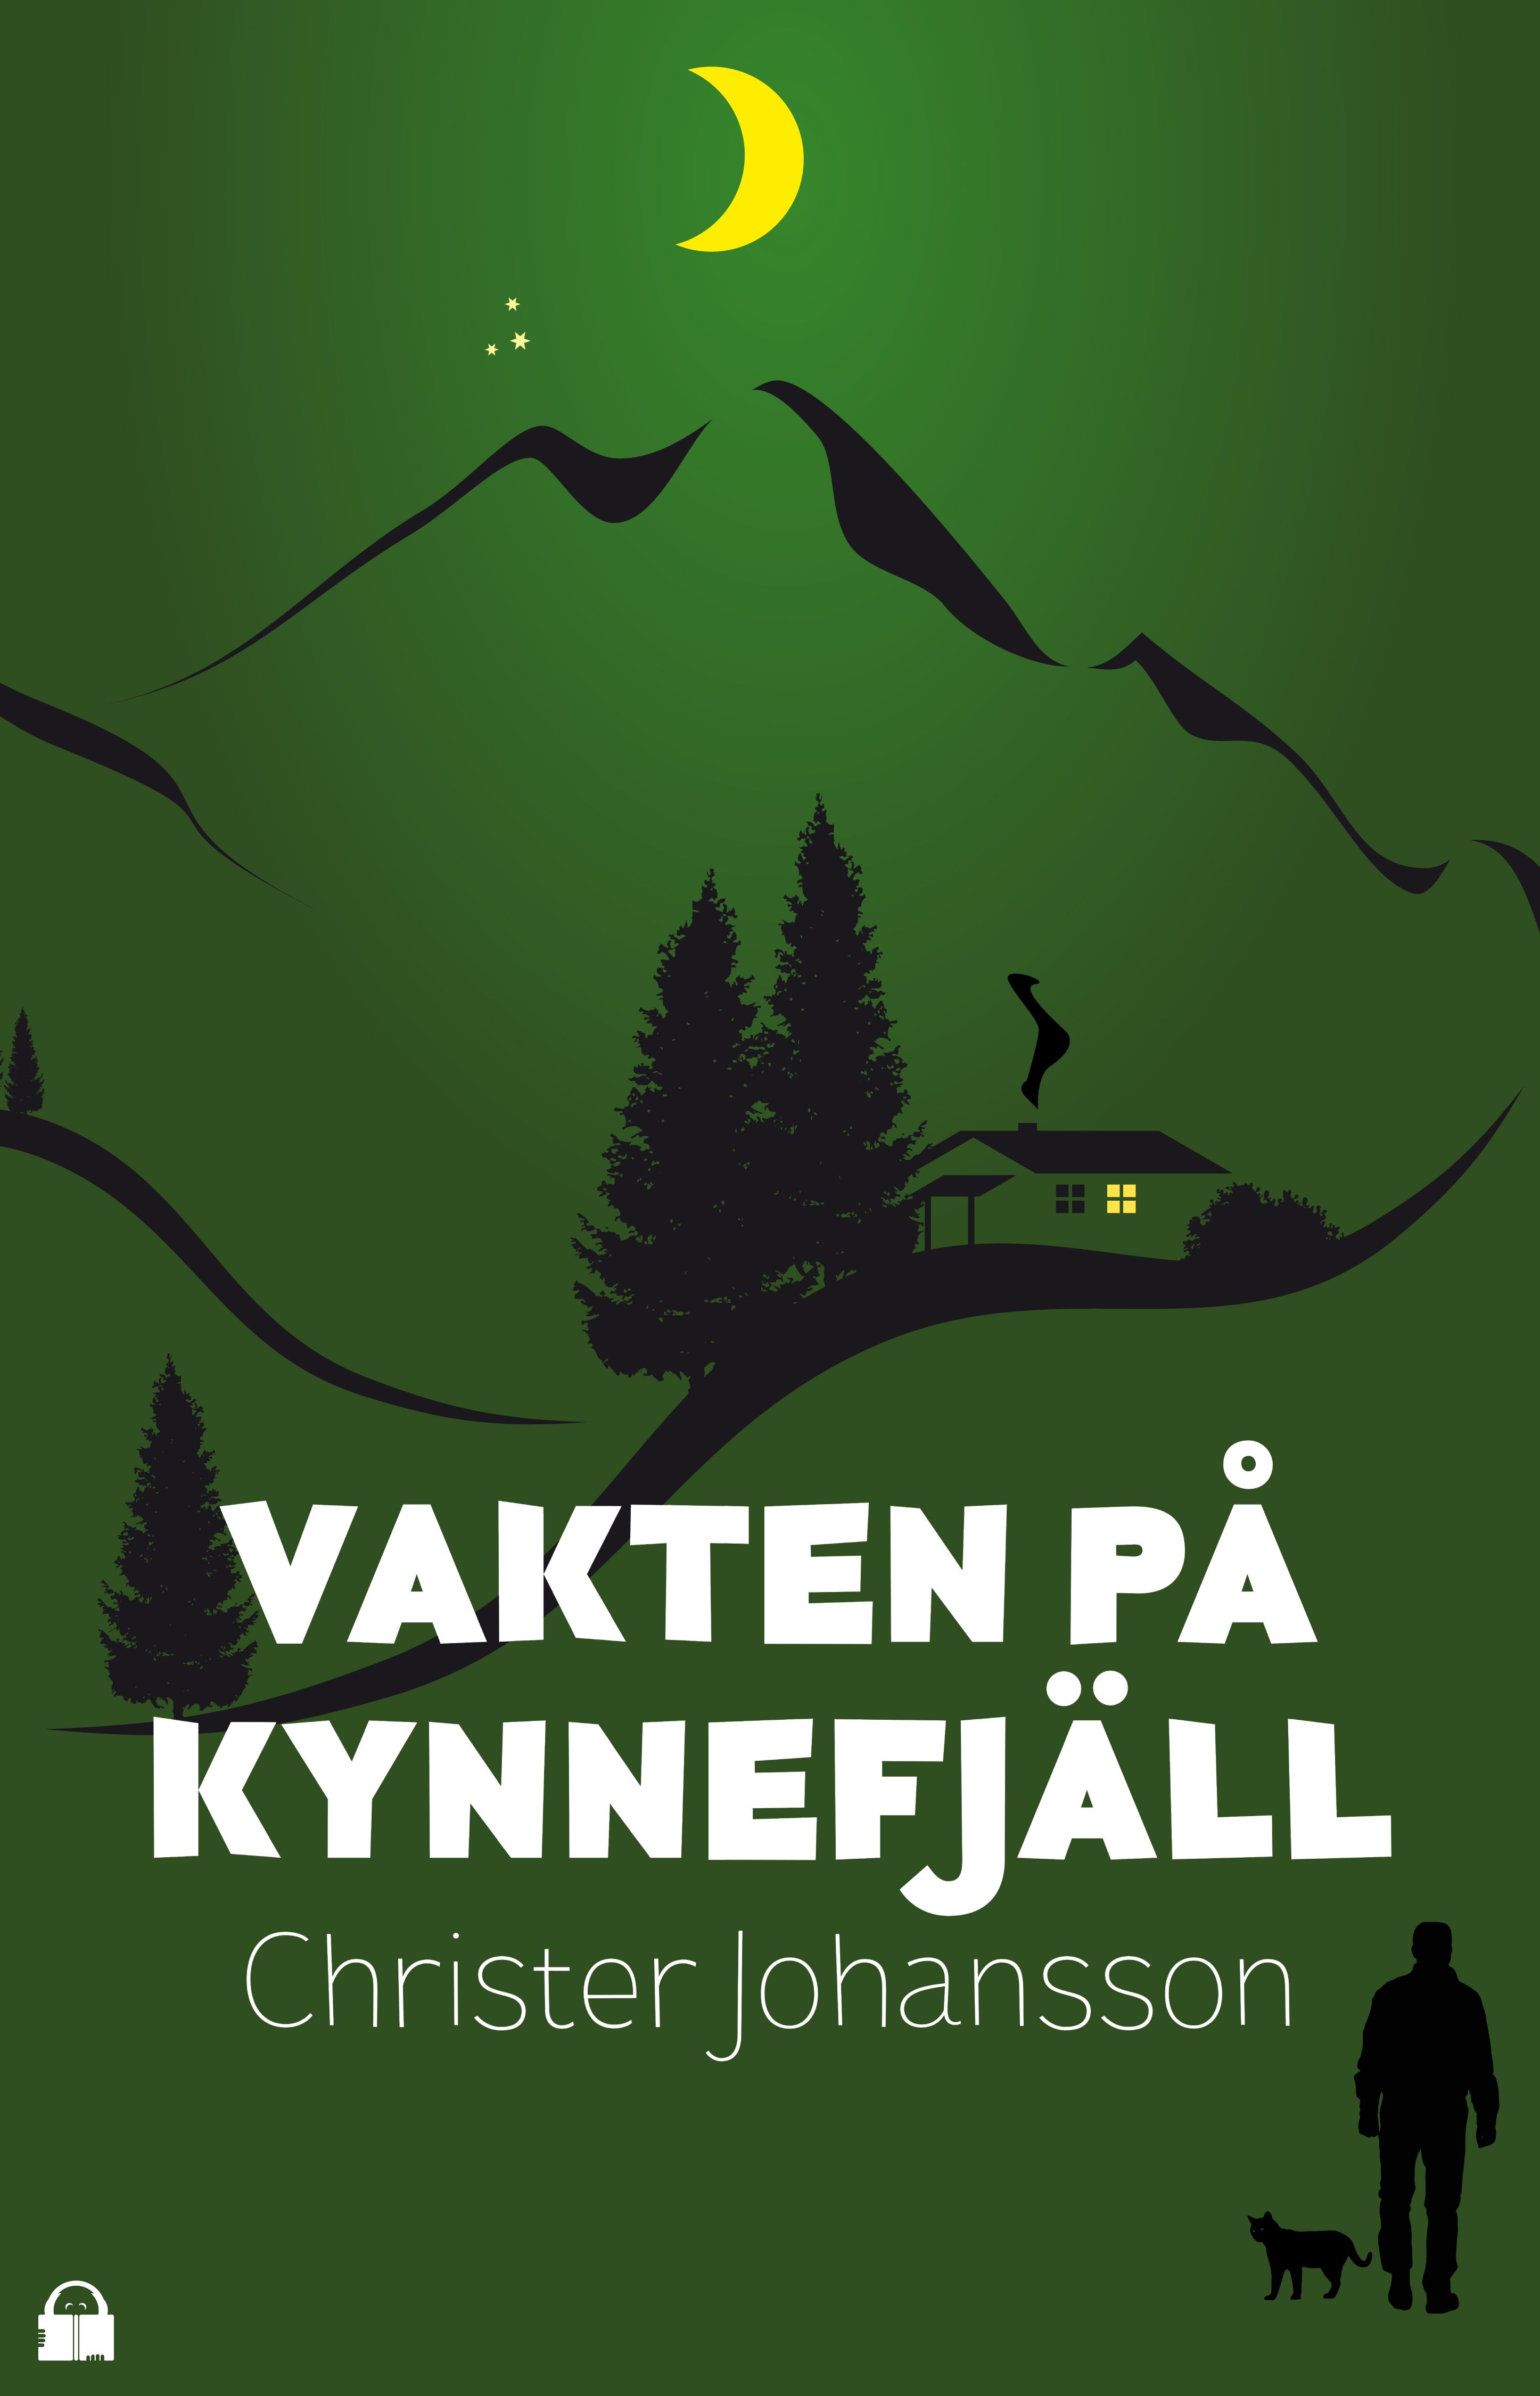 Vakten på Kynnefjäll, eBook by Christer Johansson